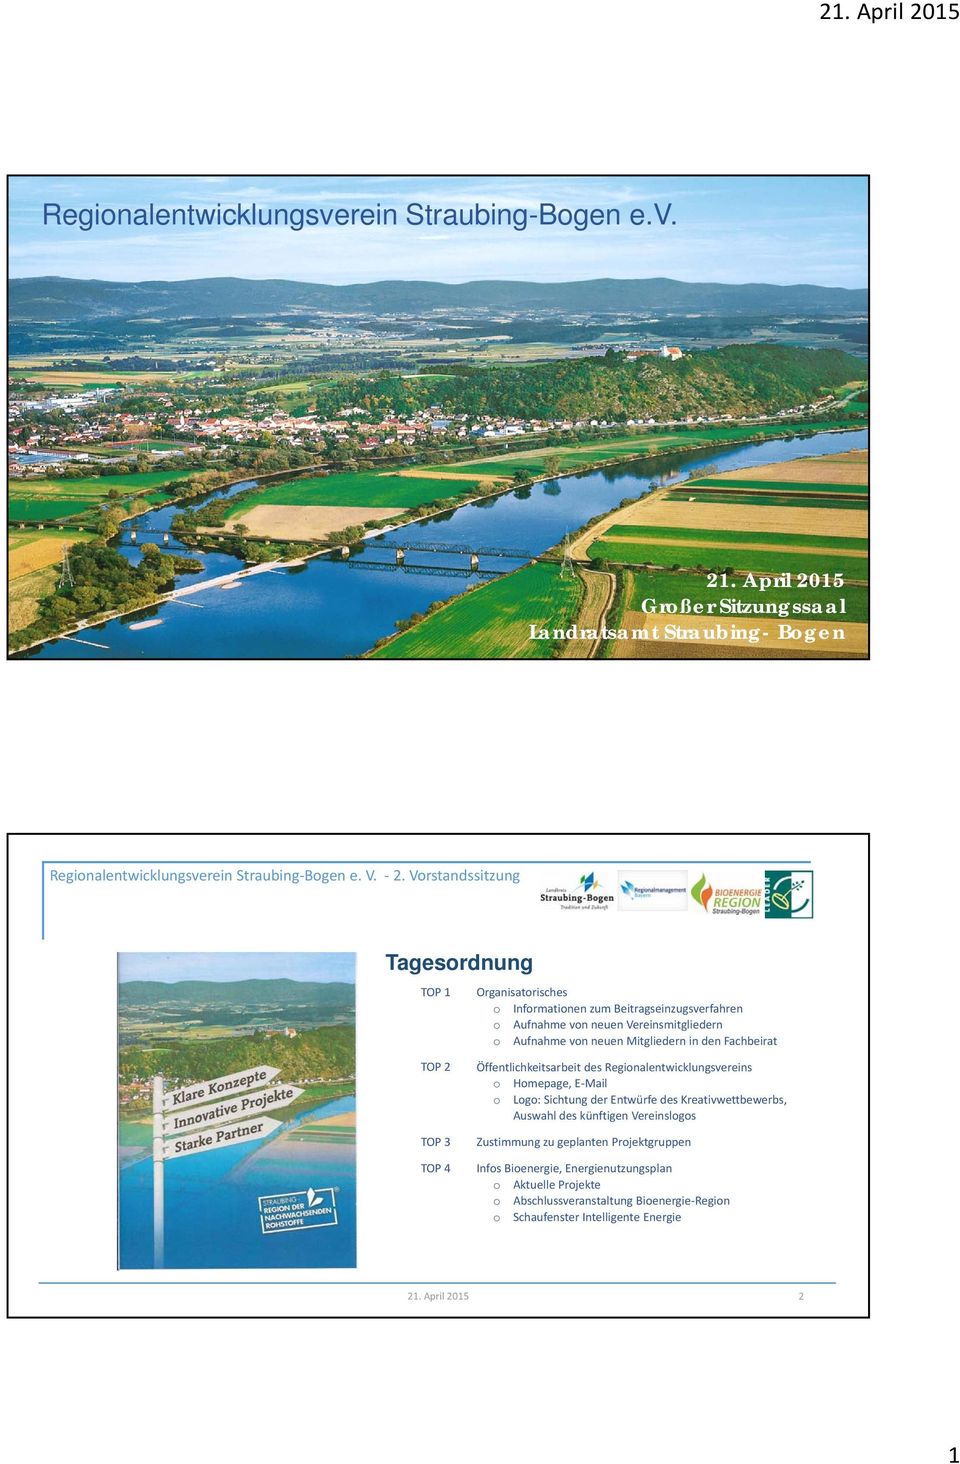 Großer Sitzungssaal Landratsamt Straubing- Bogen Tagesordnung TOP 1 Organisatorisches o Informationen zum